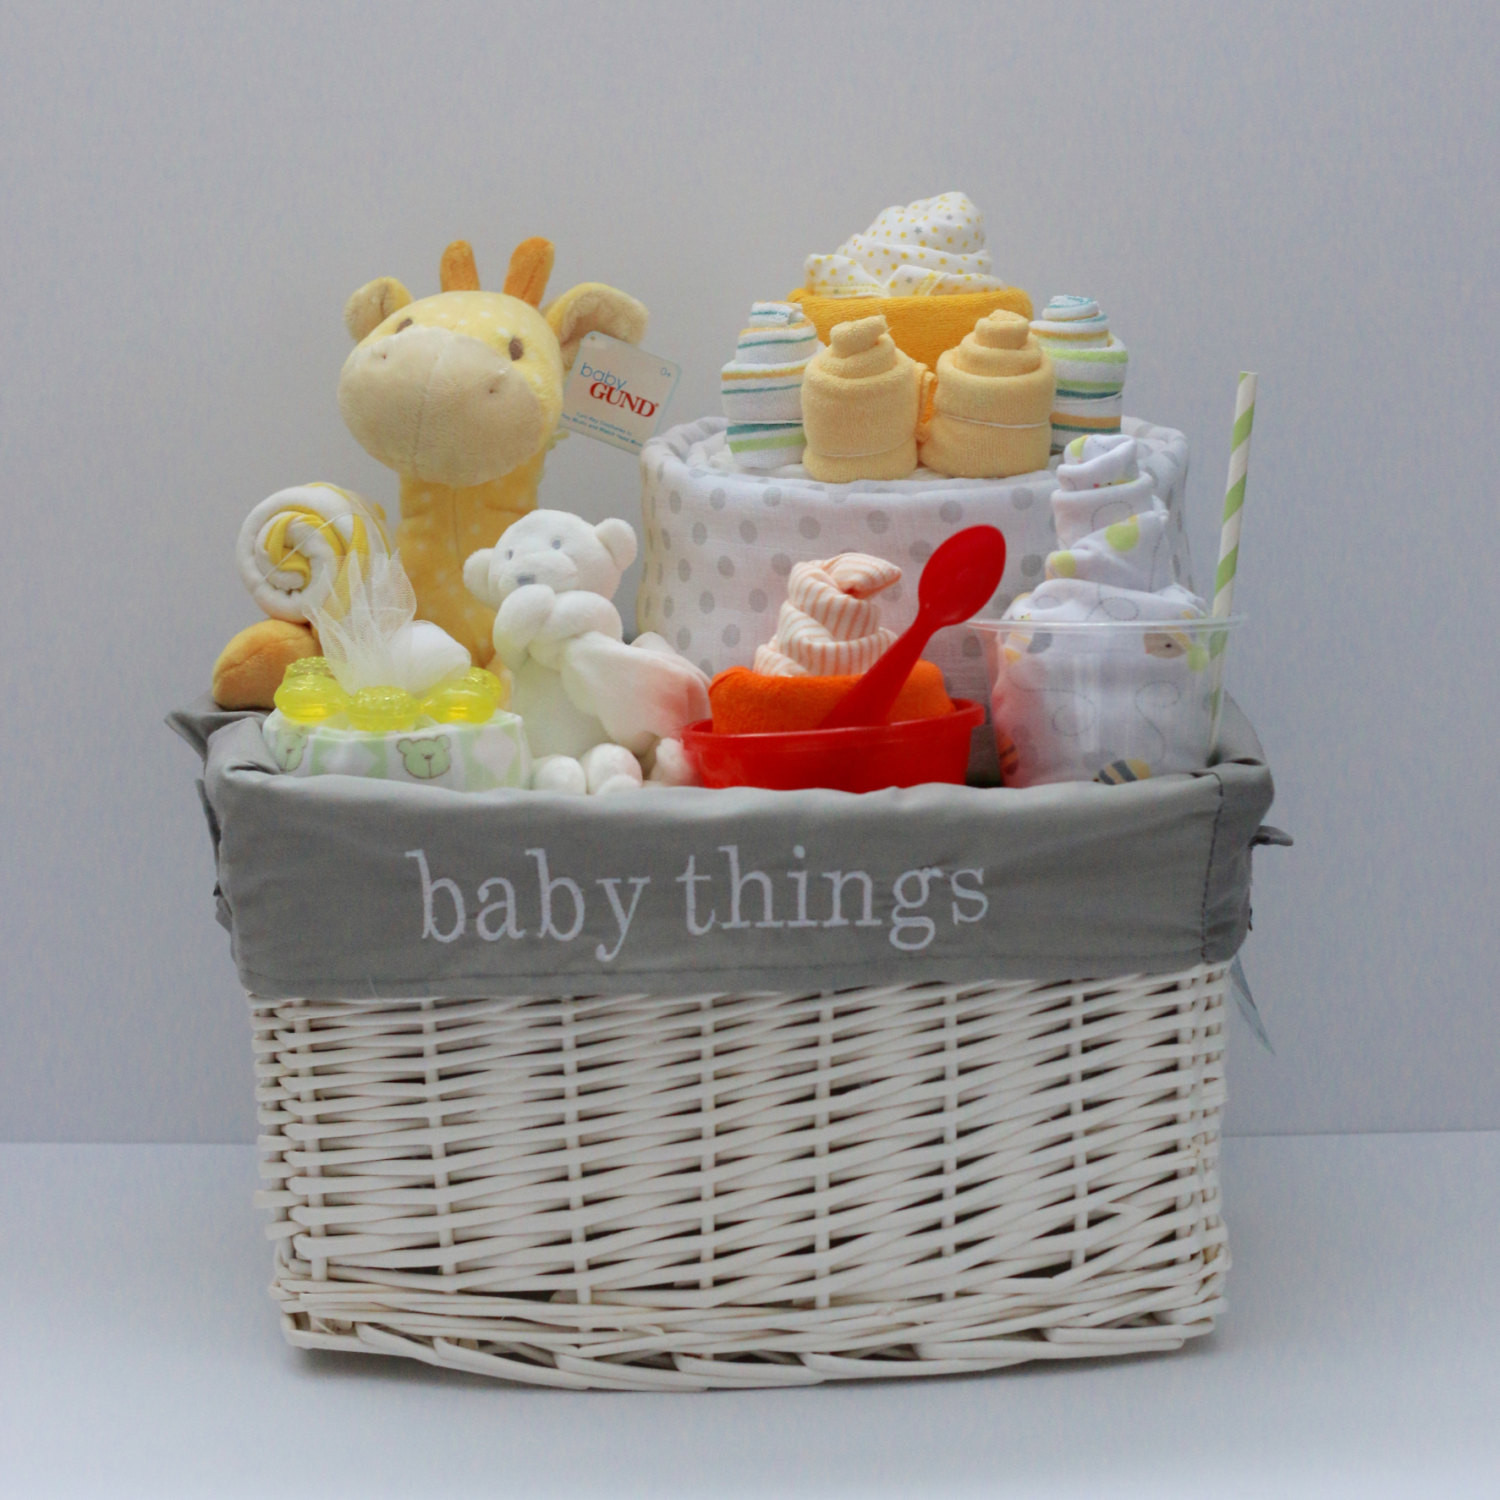 Newborn Gift Basket Ideas
 Gender Neutral Baby Gift Basket Baby Shower Gift Unique Baby